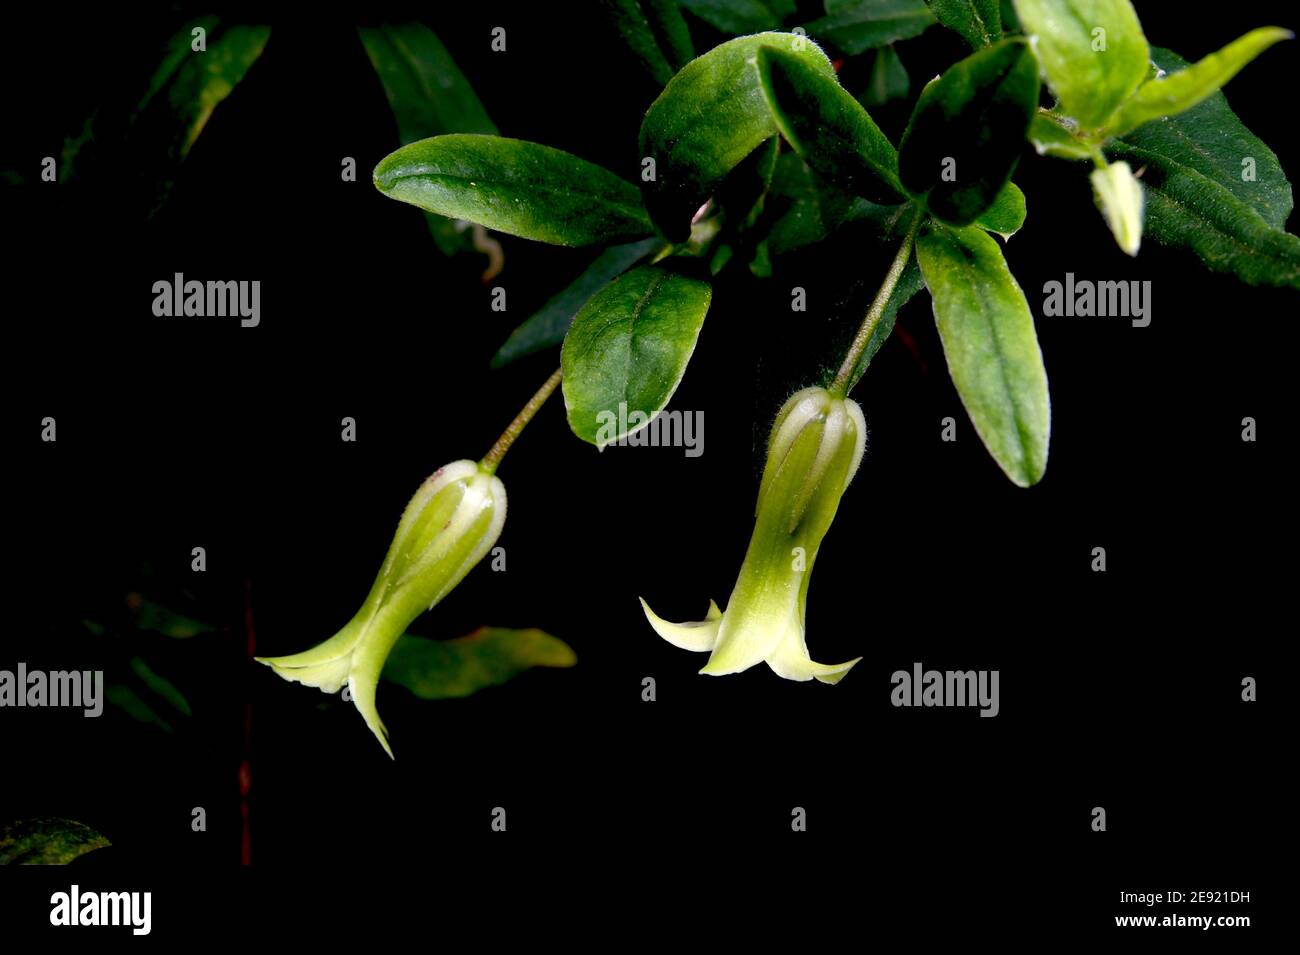 Les boulettes de pommes (Blardiera scandens), également connues sous le nom de baies de pommes, ont de jolies fleurs vertes sur un rambling super-réducteur, suivies de baies vertes comestibles. Banque D'Images